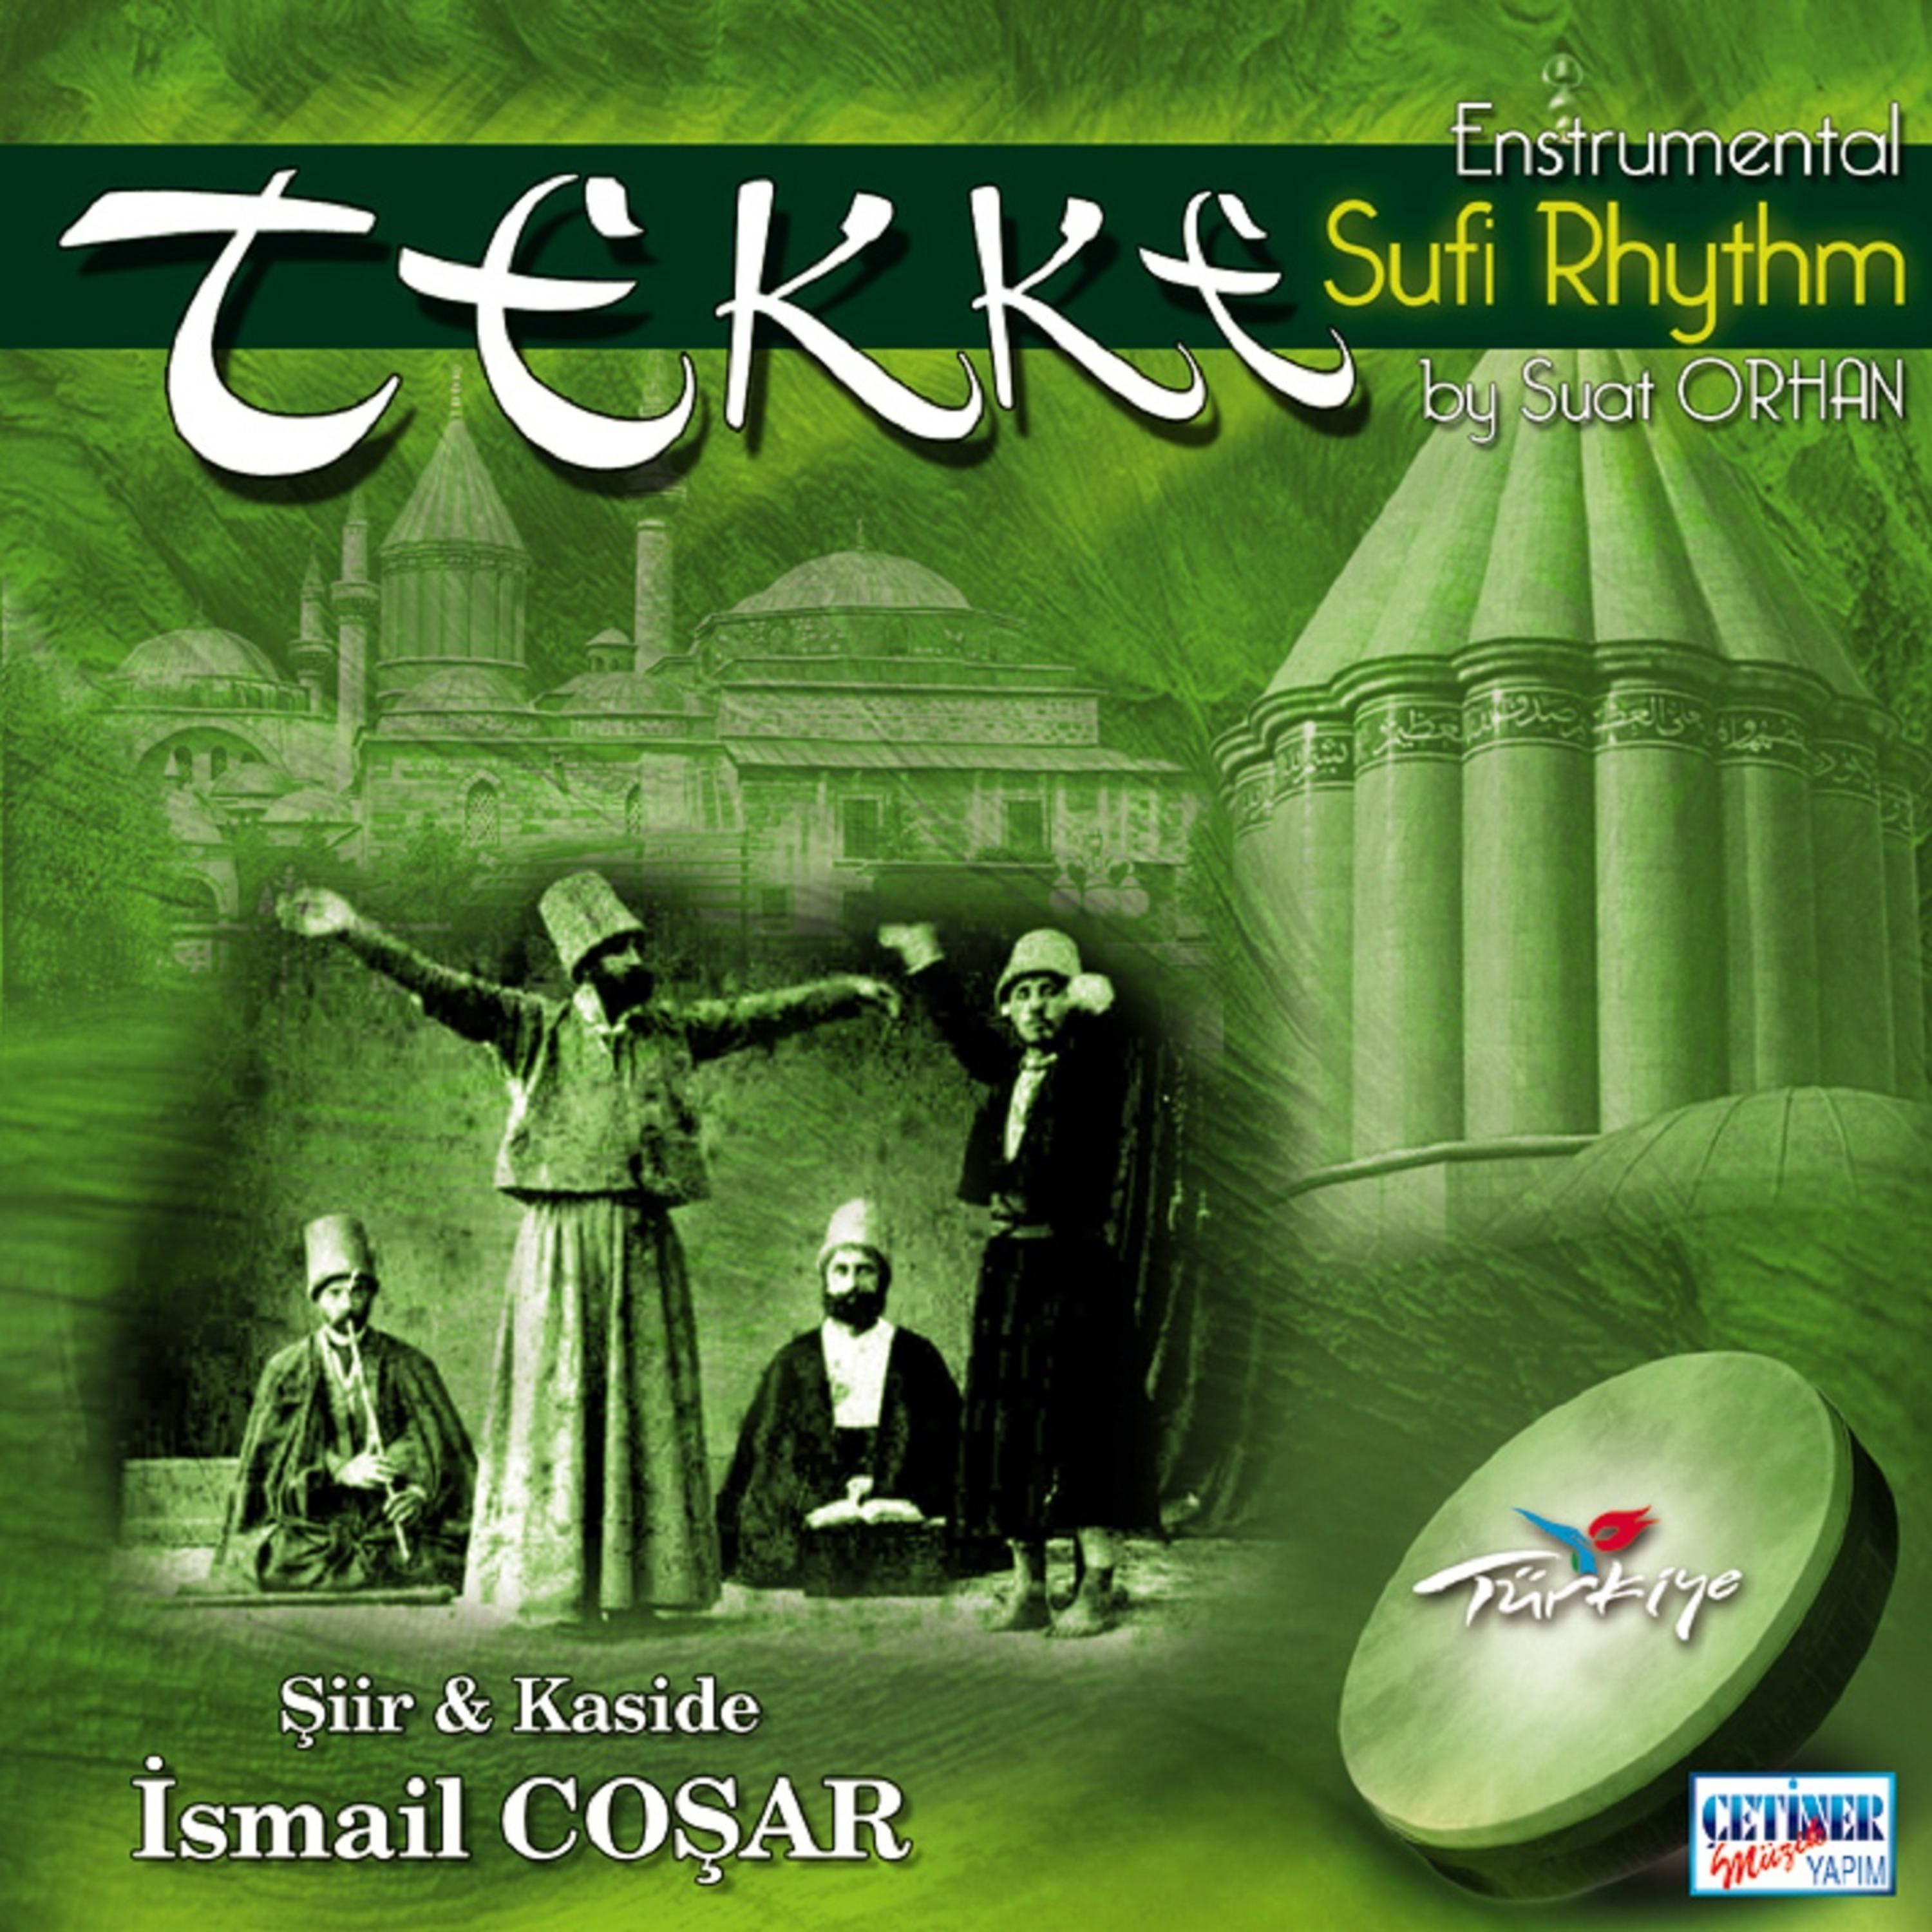 Постер альбома Tekke Sufi Rhythm